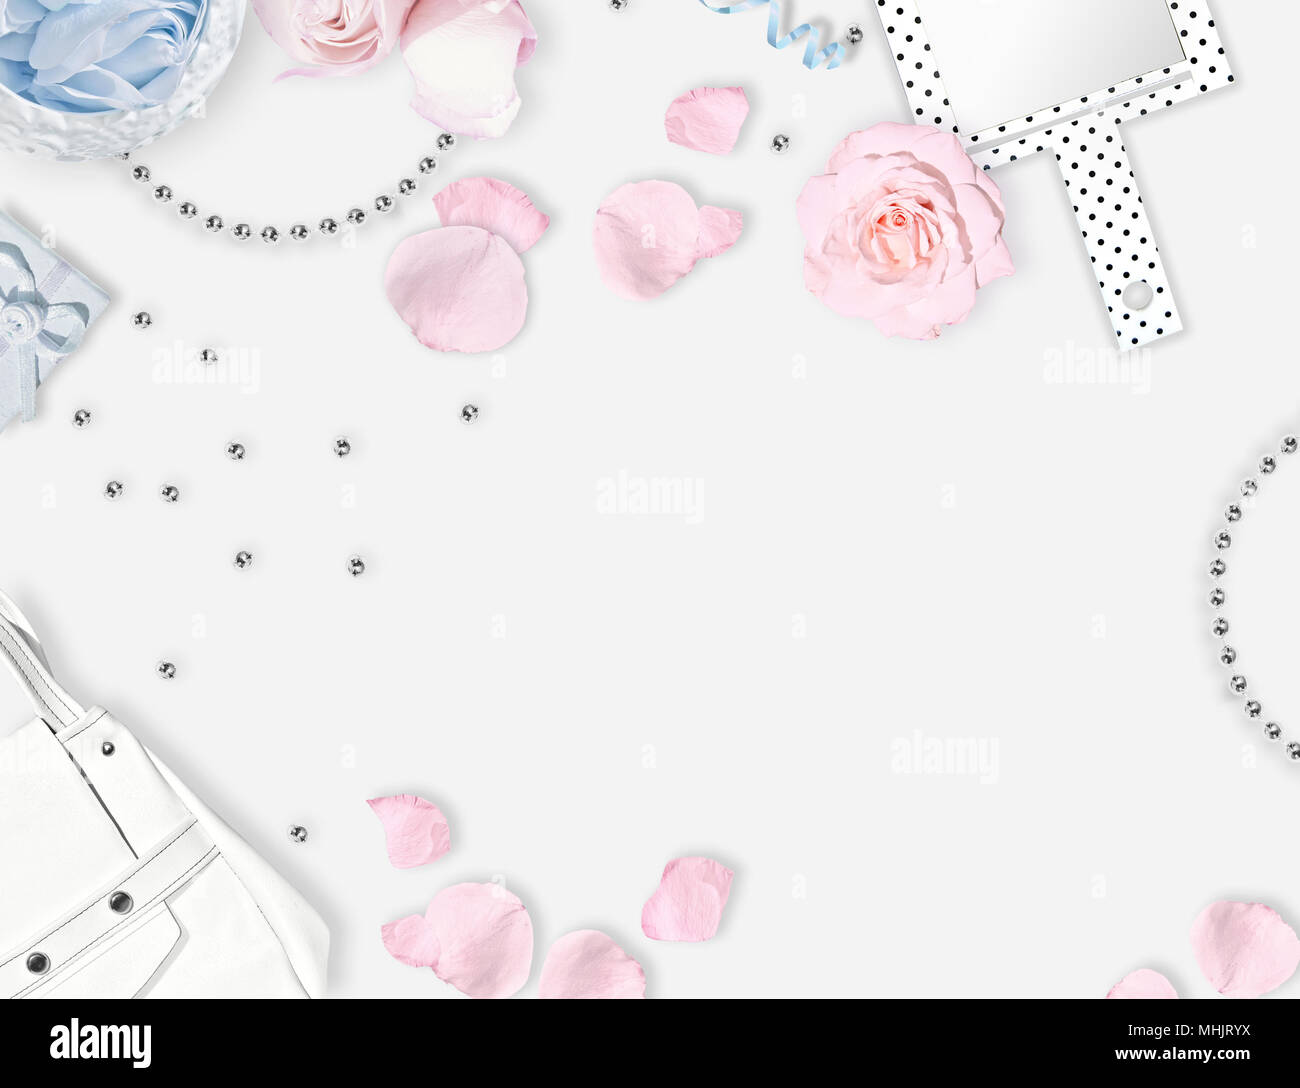 Weiß feminine Hintergrund. Flach. Rosen, Spiegel, weiße Tüte. Für Text platzieren. Fröhliche Gedanken jeden Tag. Muttertag Stockfoto